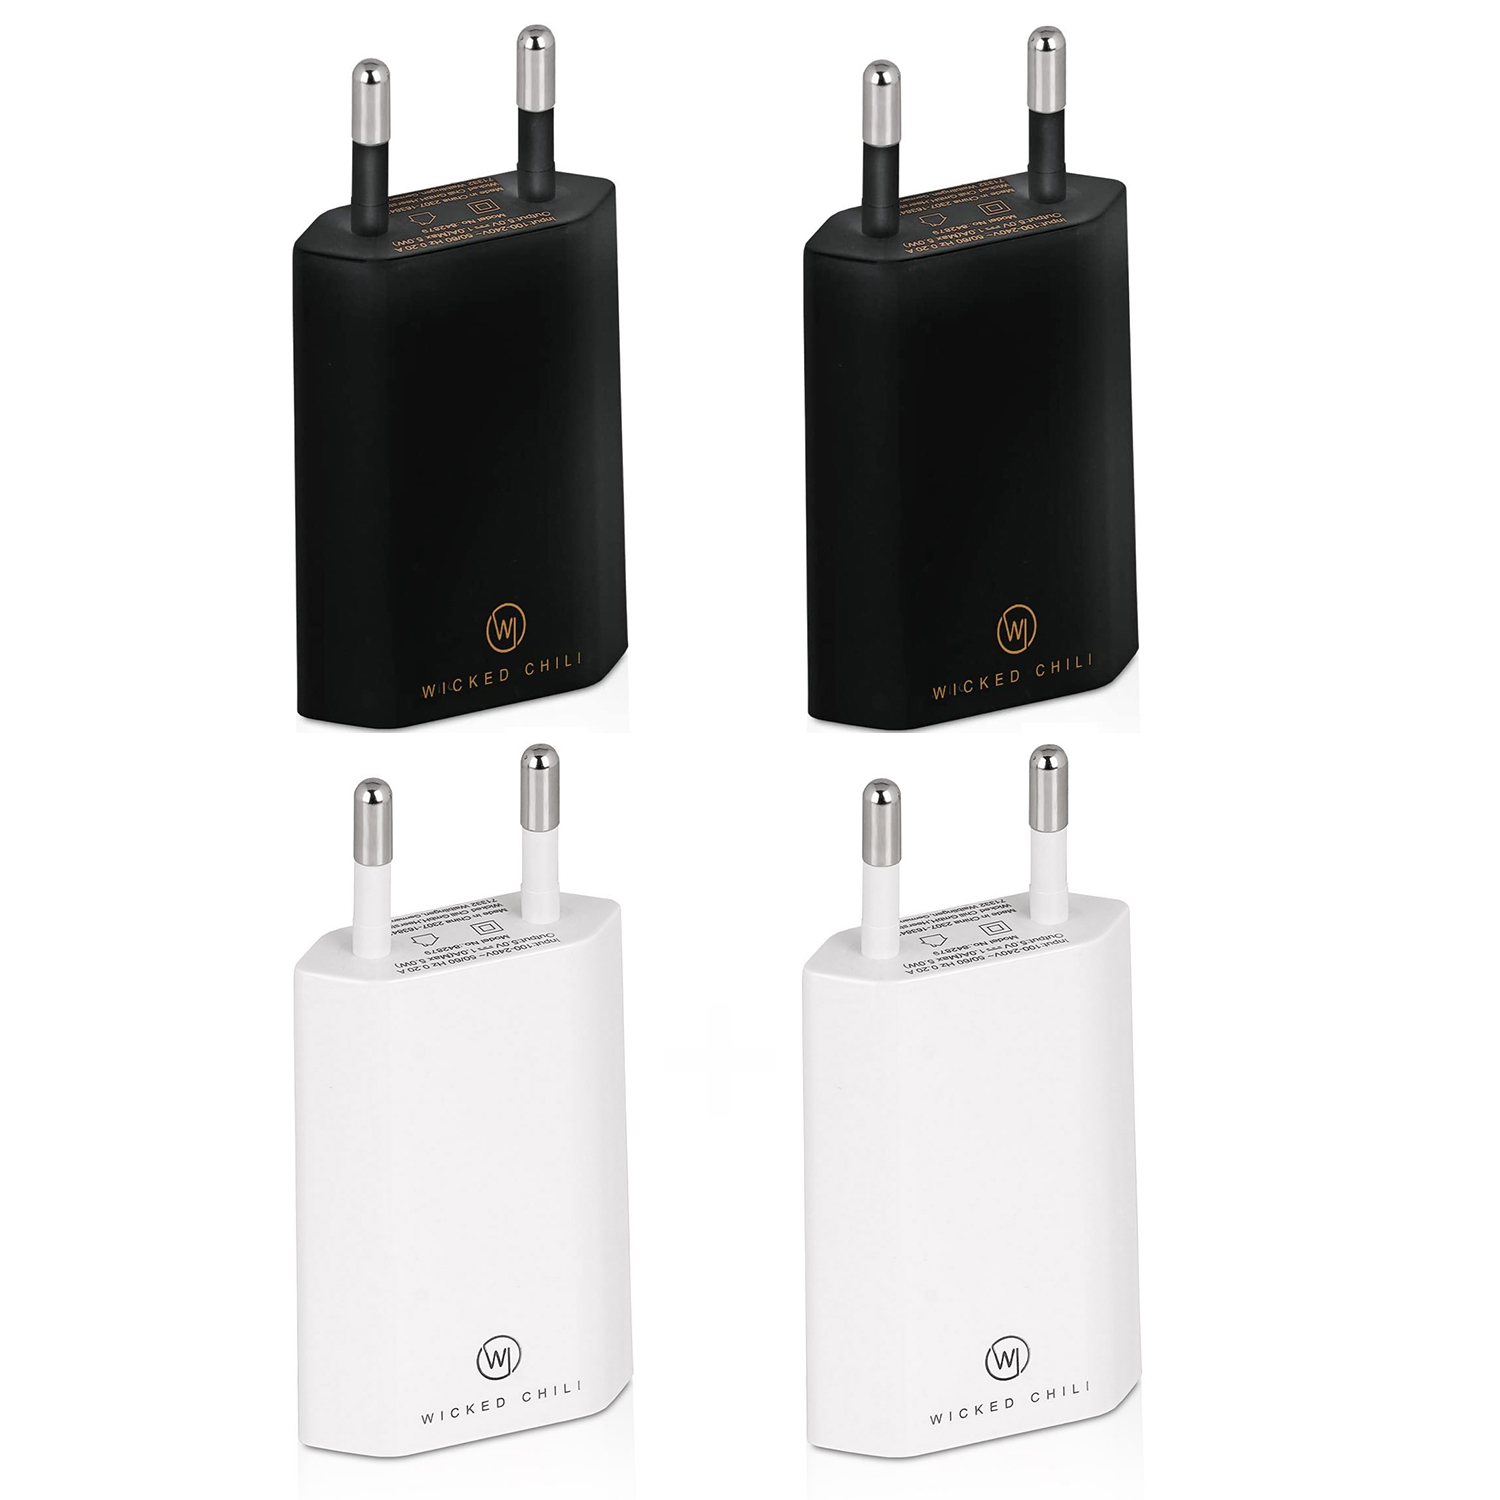 2 USB weiß / Smartphone 4x 5V) Netzteil / WICKED / CHILI Handy iPhone Galaxy schwarz (1A, Ladegerät für USB 2 Adapter Samsung